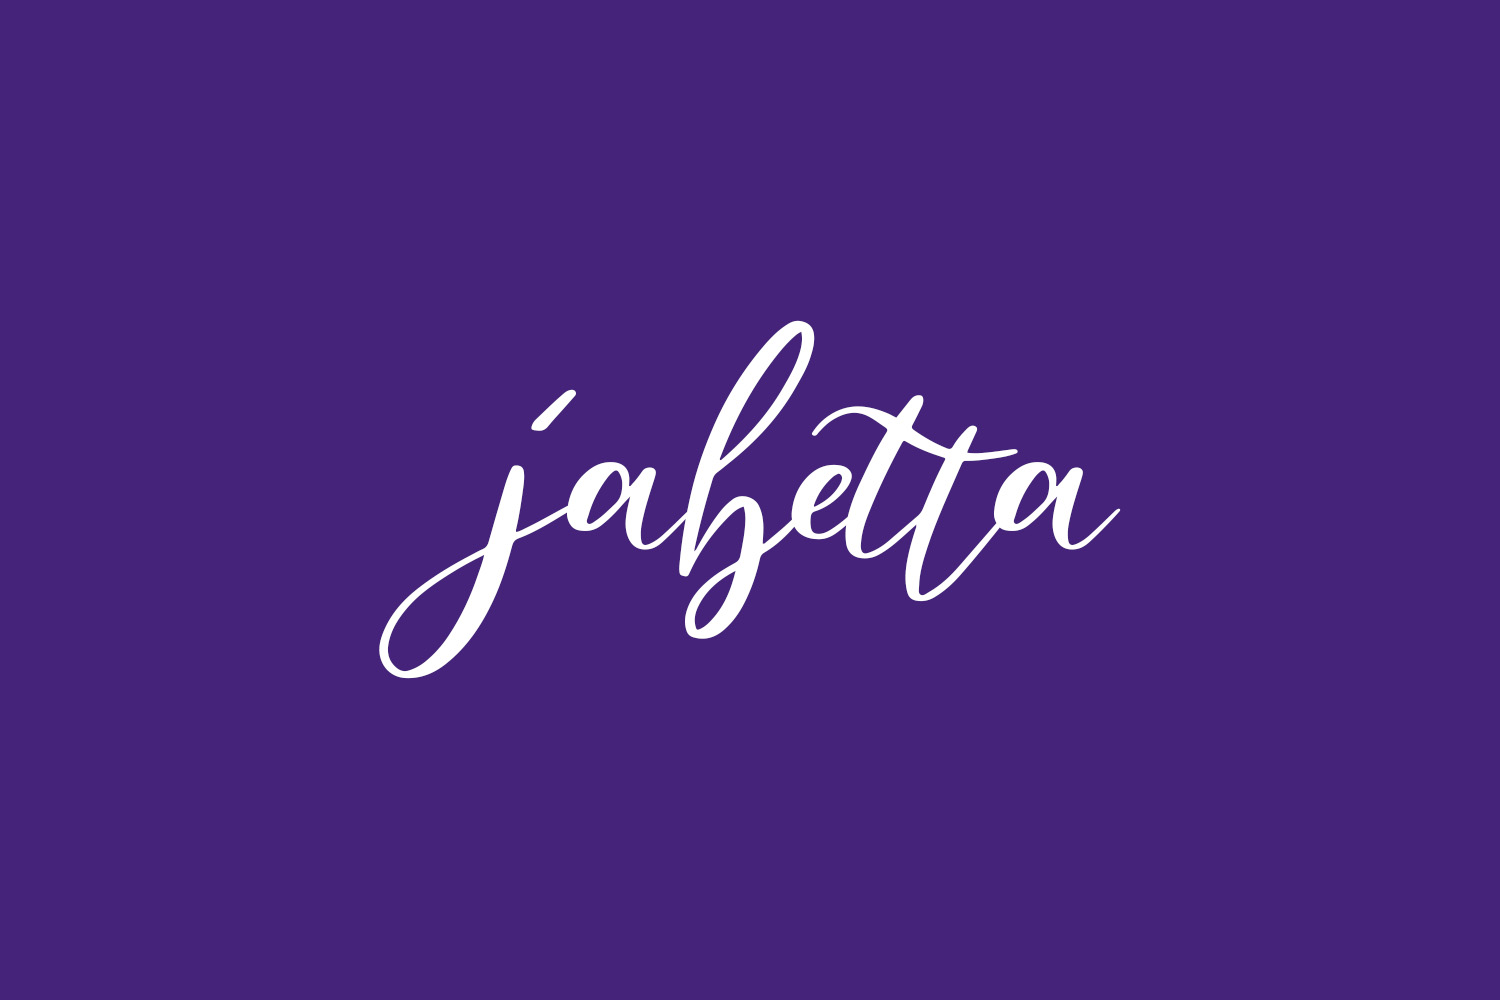 Jabetta Free Font